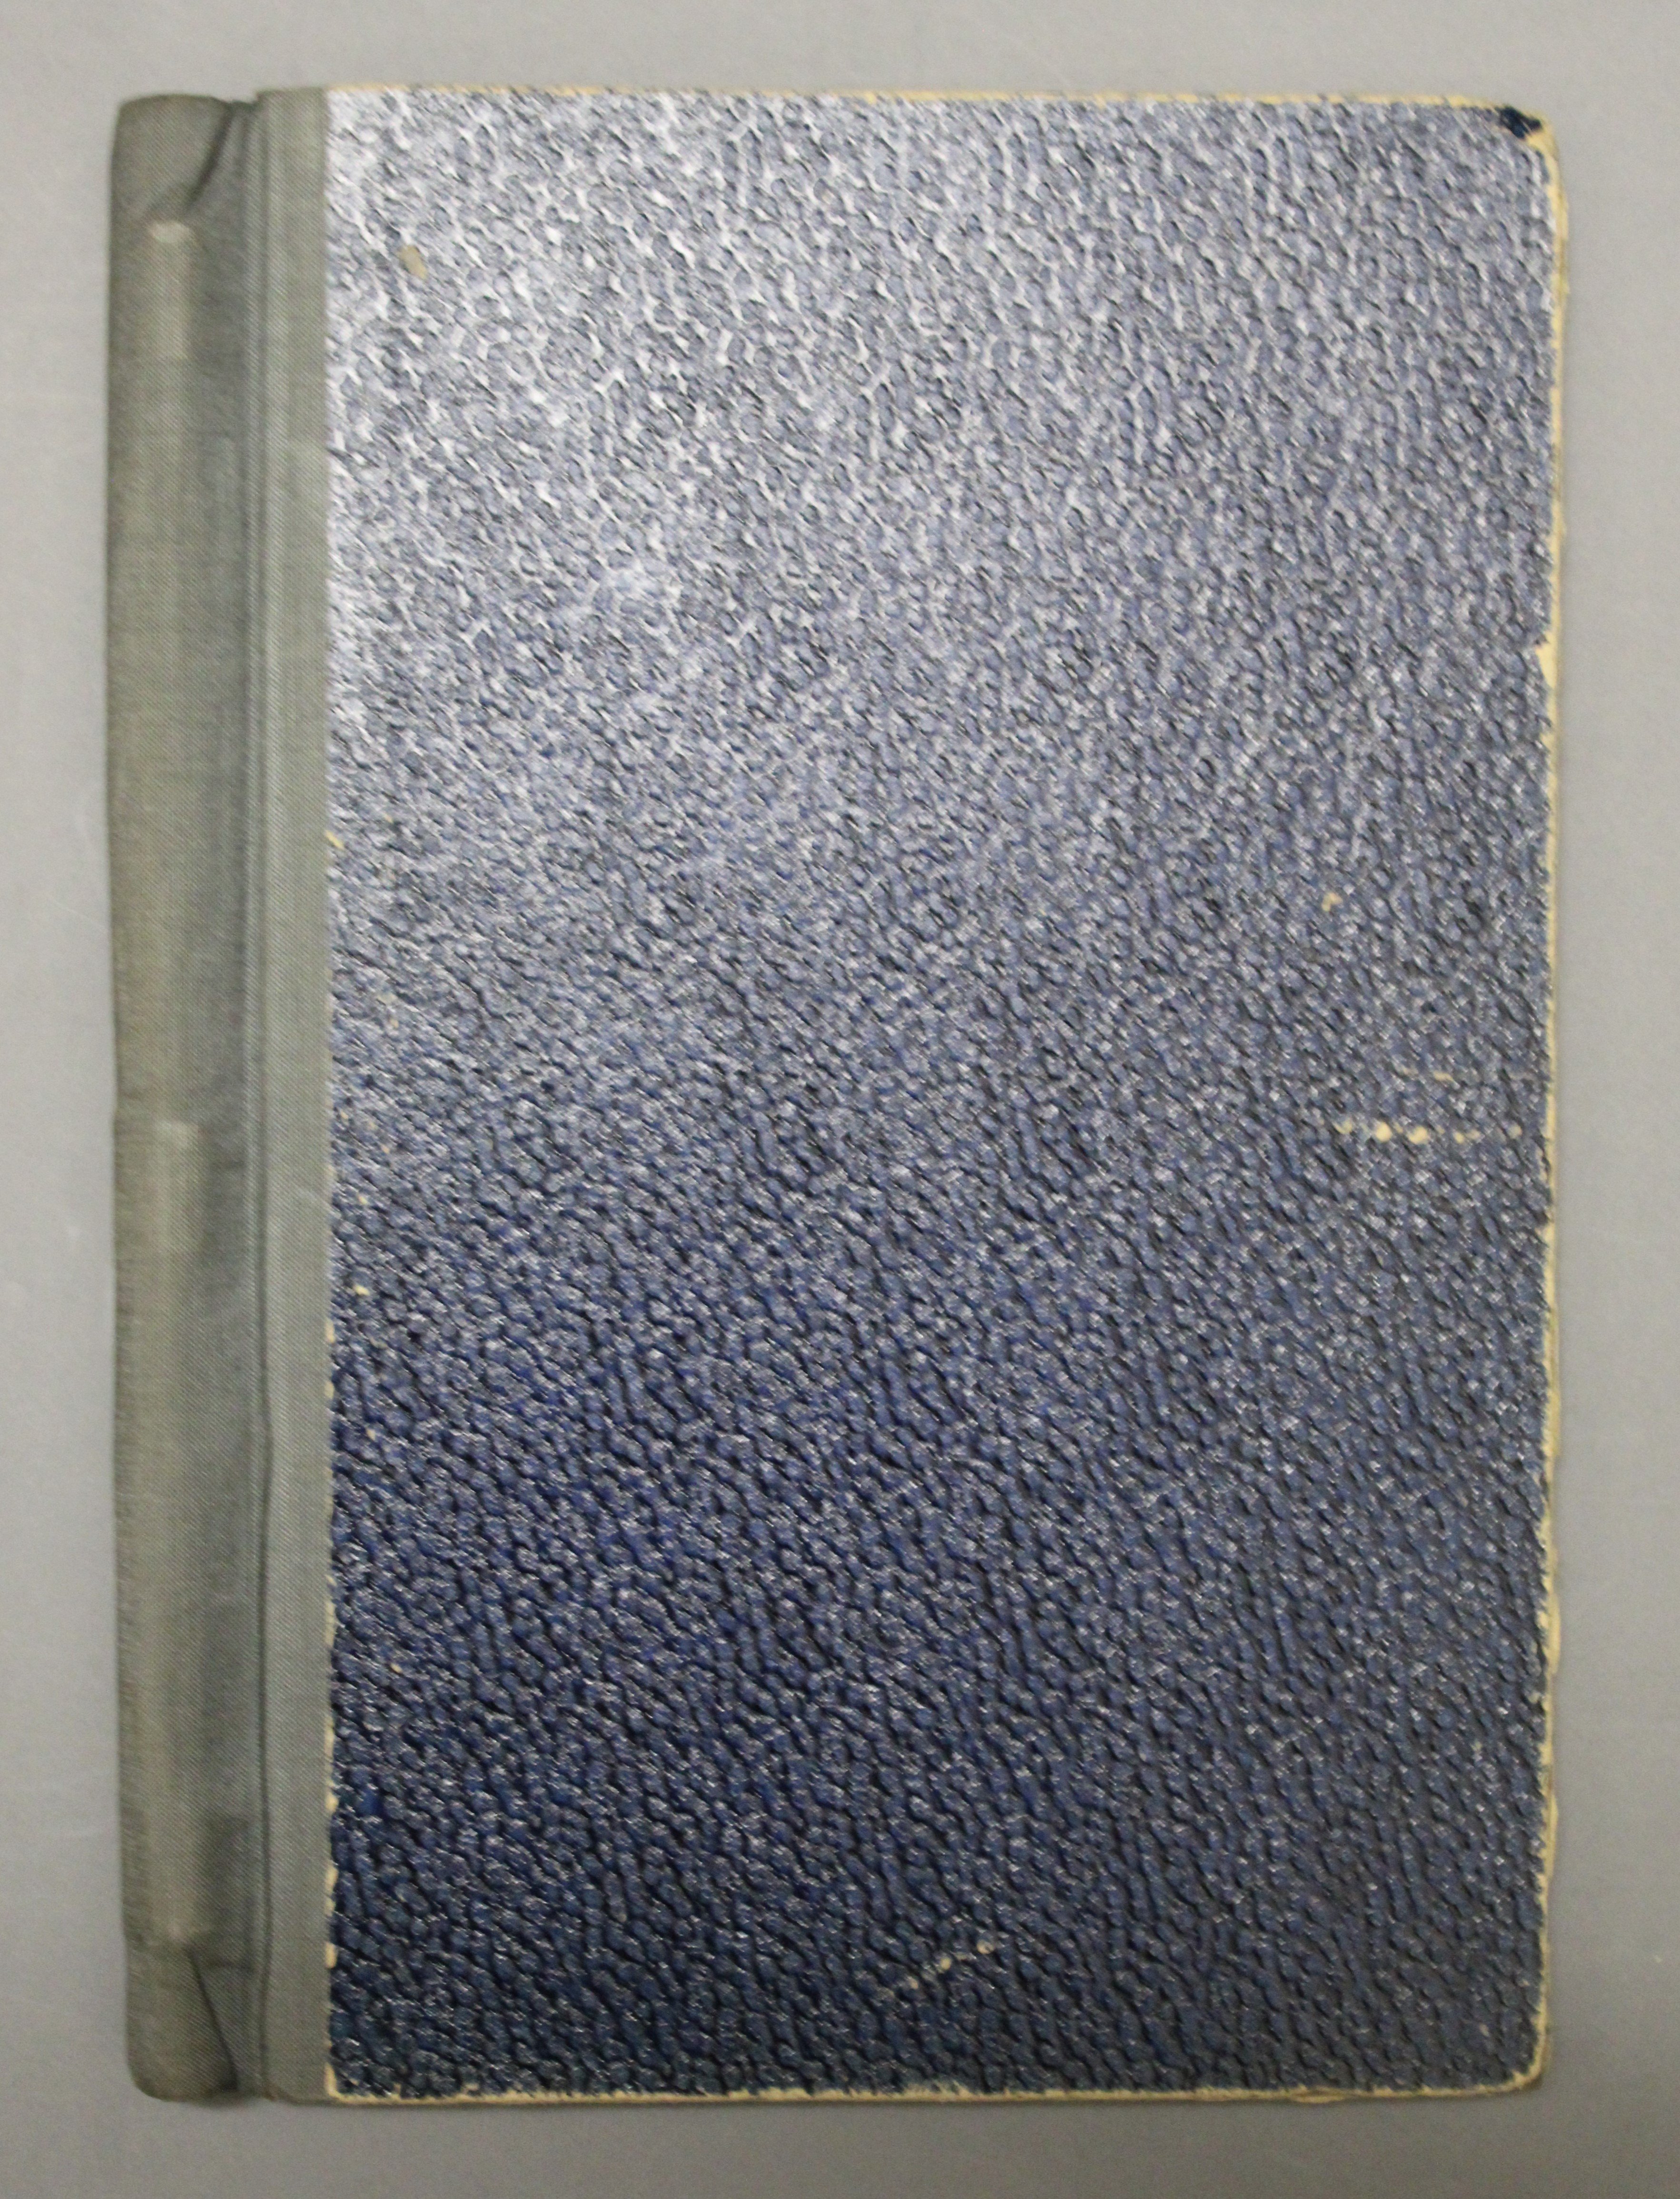 Brigadebuch des Postamt Großschönau 1962/63 (Deutsches Damast- und Frottiermuseum CC BY-NC-SA)